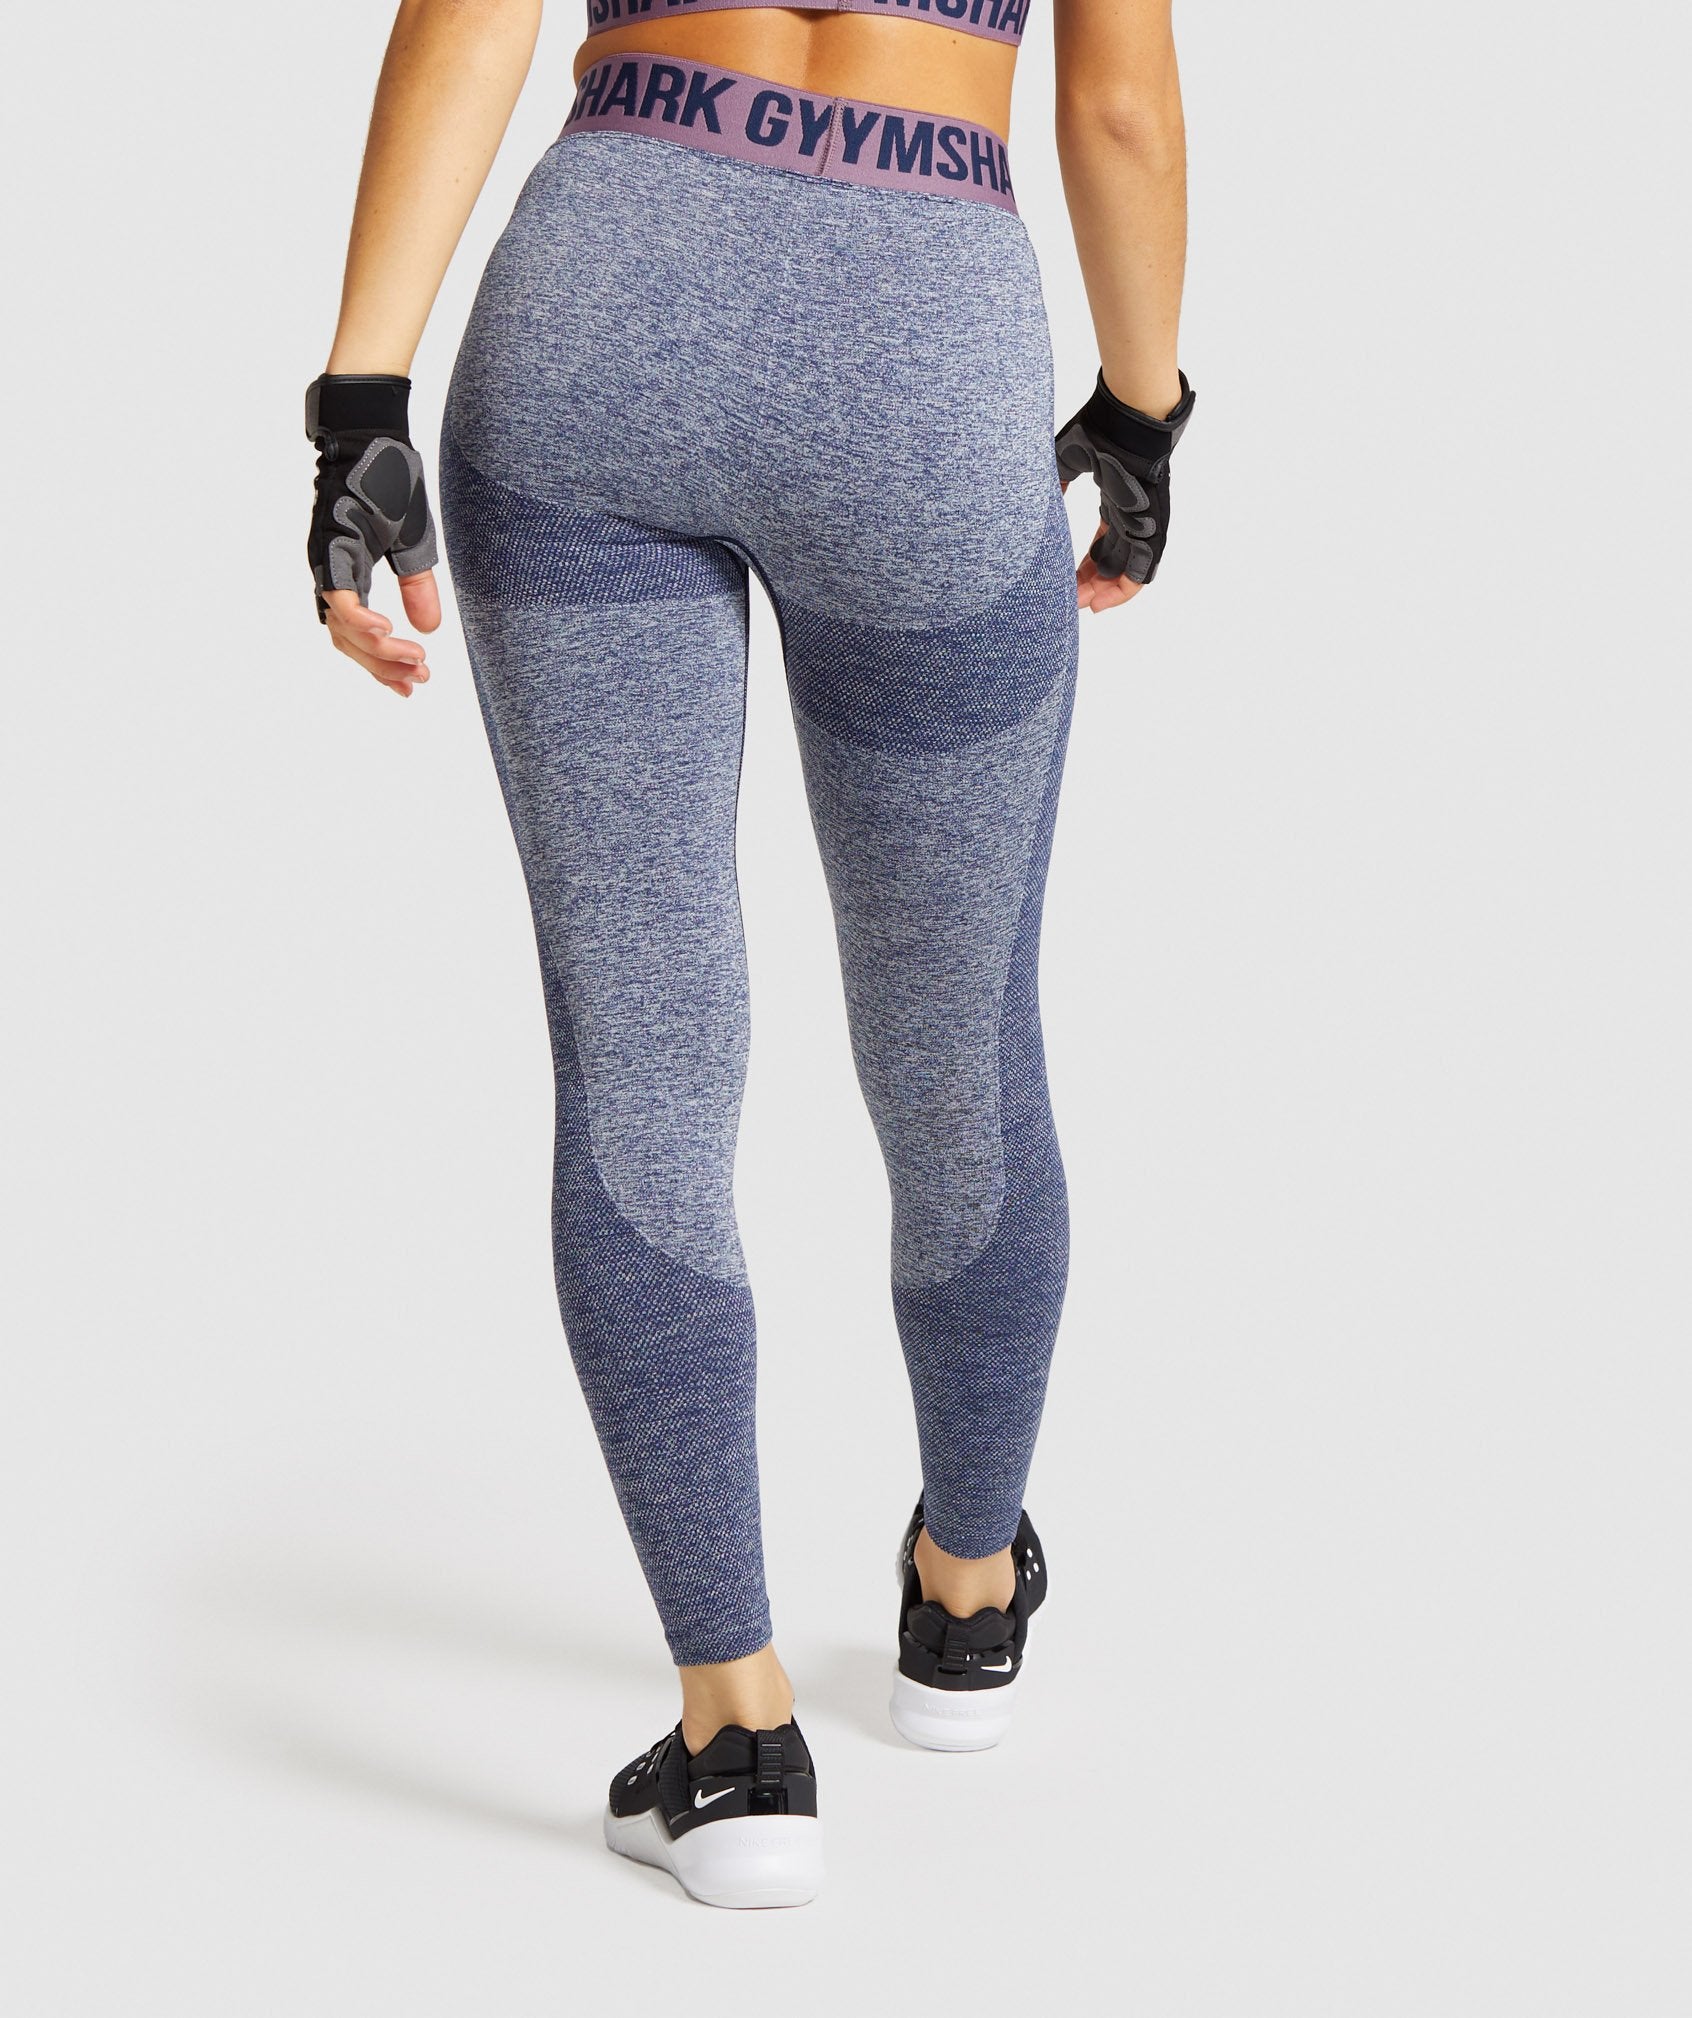 Your new favourite leggings. The Gymshark Flex Leggings are back